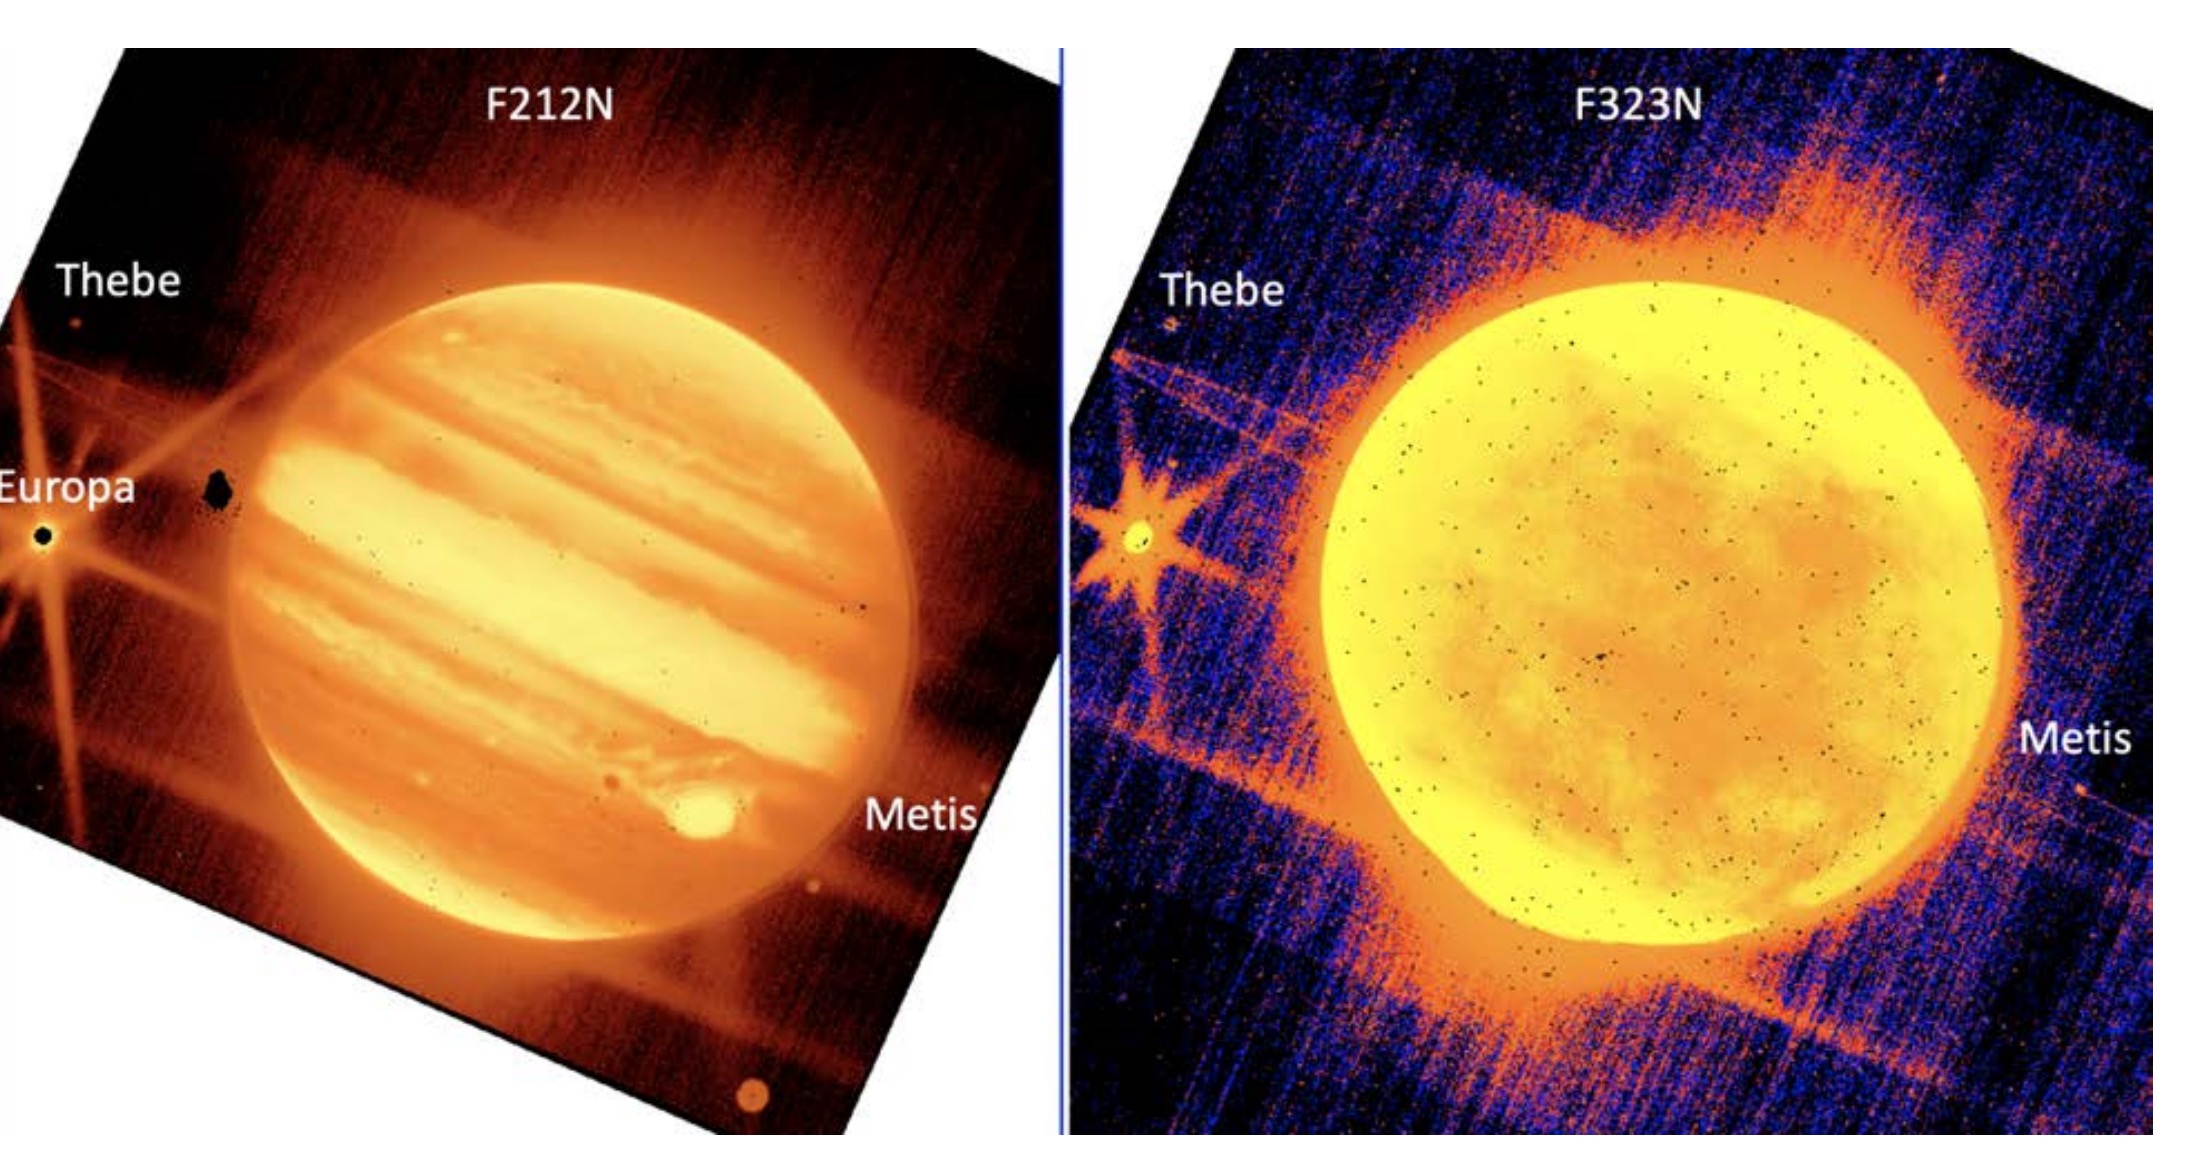 Izquierda: Júpiter y sus lunas Europa, Tebe y Metis se ven a través del filtro de 2,12 micras del instrumento NIRCam del telescopio espacial James Webb.  Derecha: Júpiter y Europa, Tebe y Metis se ven a través del filtro de 3,23 micras de NIRCam.